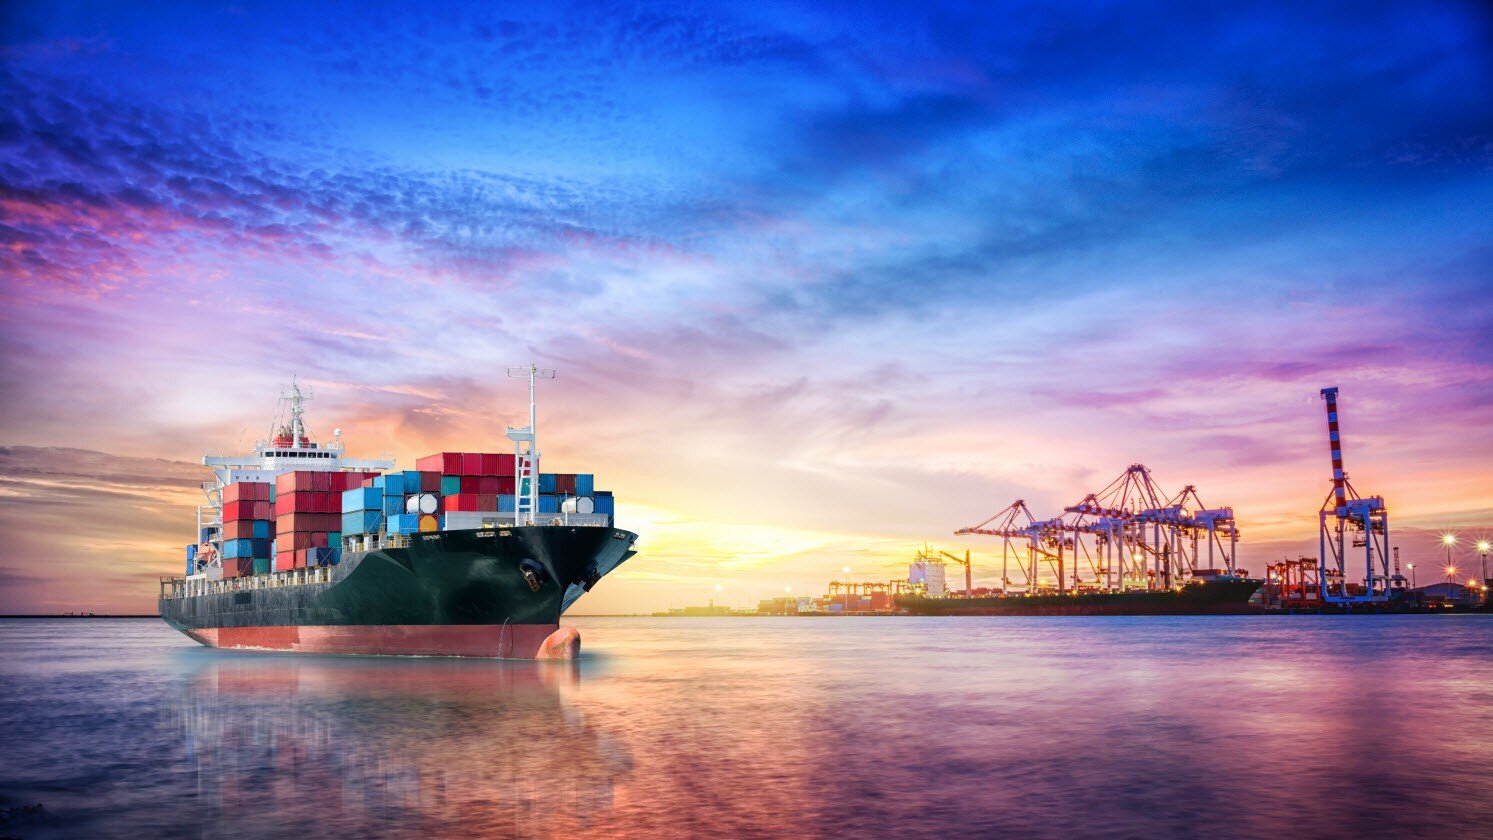 Ocean Freight - freight forwarder - ocean freight quotes - Houston Shipping Company